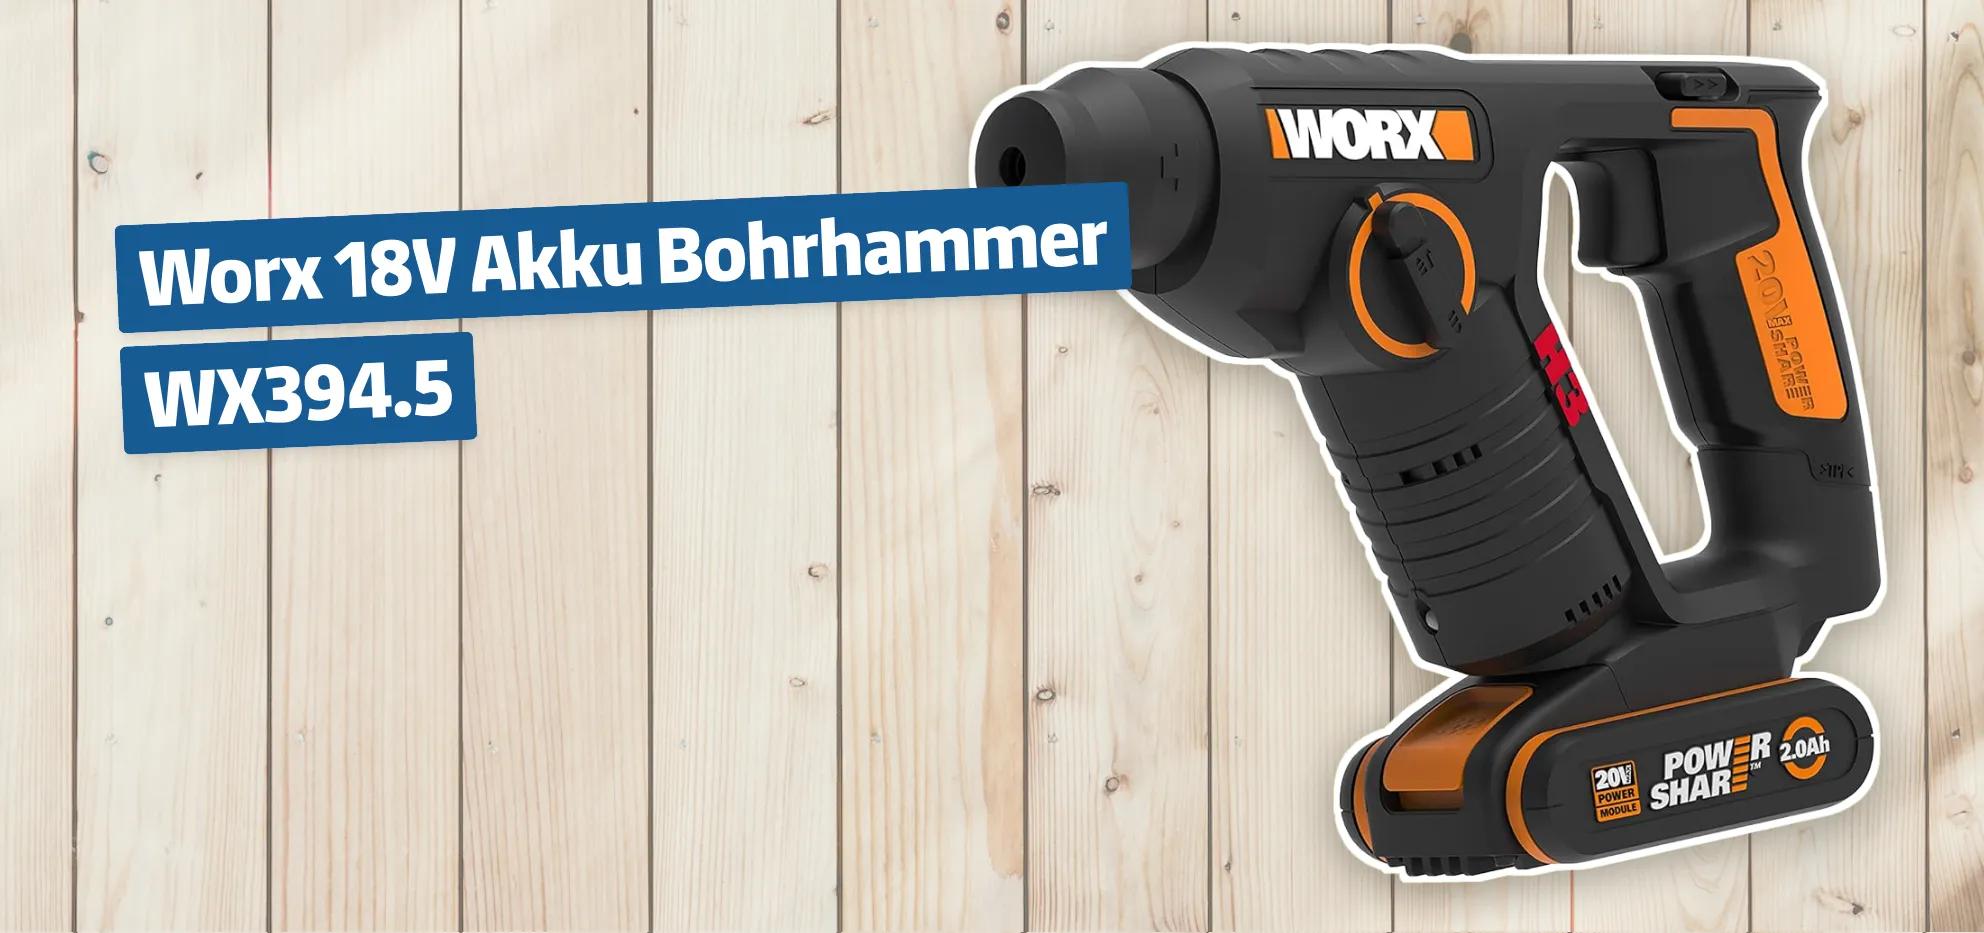 Worx 18V Akku Bohrhammer WX394.5